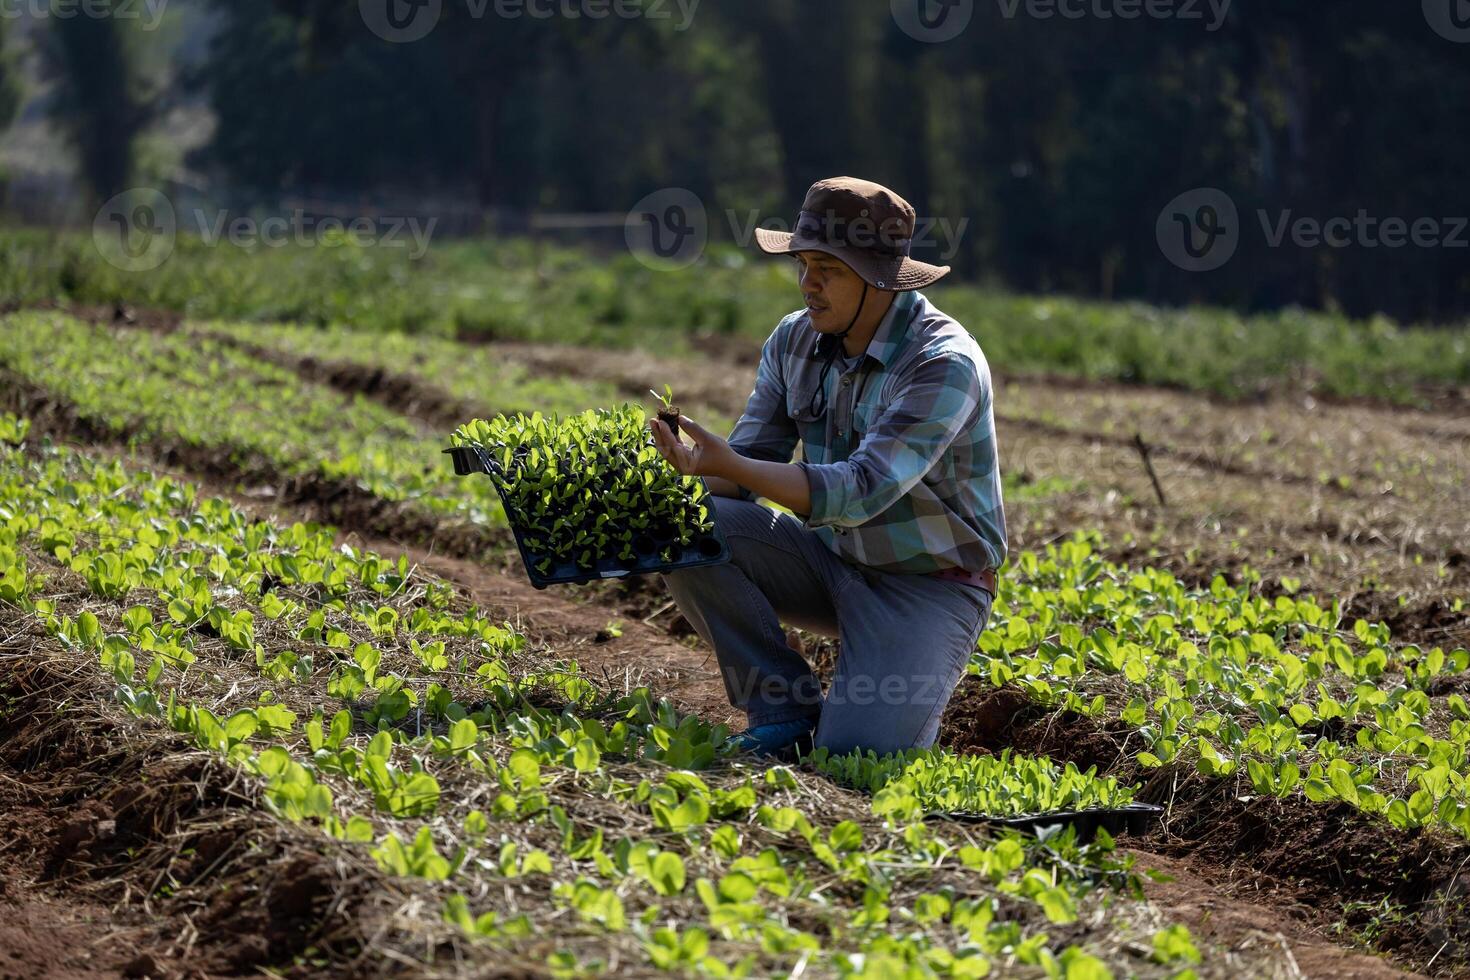 Aziatisch boer is draag- dienblad van jong groente salade zaailing naar fabriek in mulchen film voor groeit organische stoffen fabriek gedurende voorjaar seizoen en landbouw concept foto